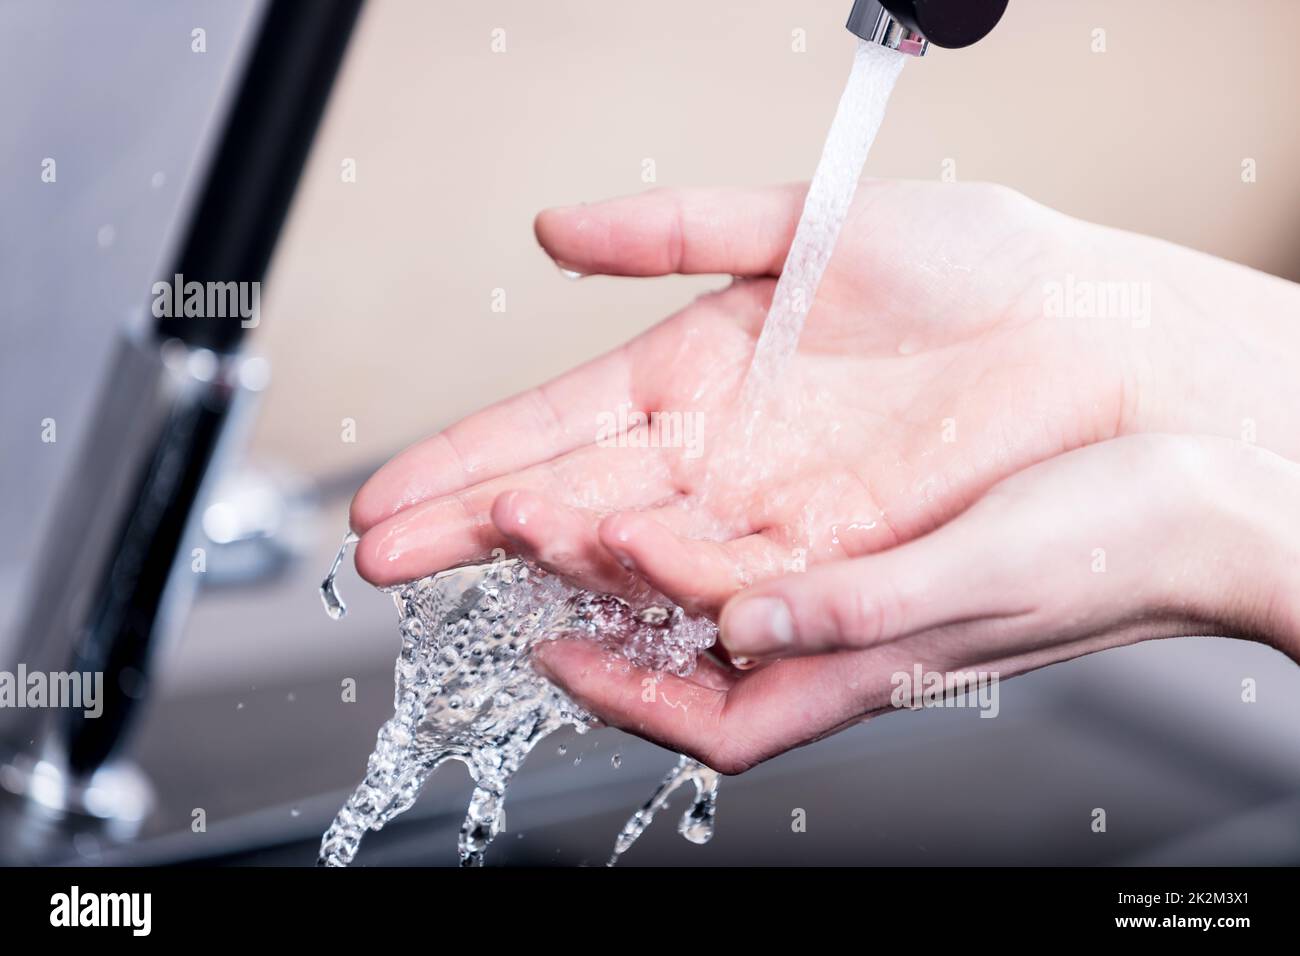 Frau waschen ihre Hände unter fließendem Wasser Stockfoto